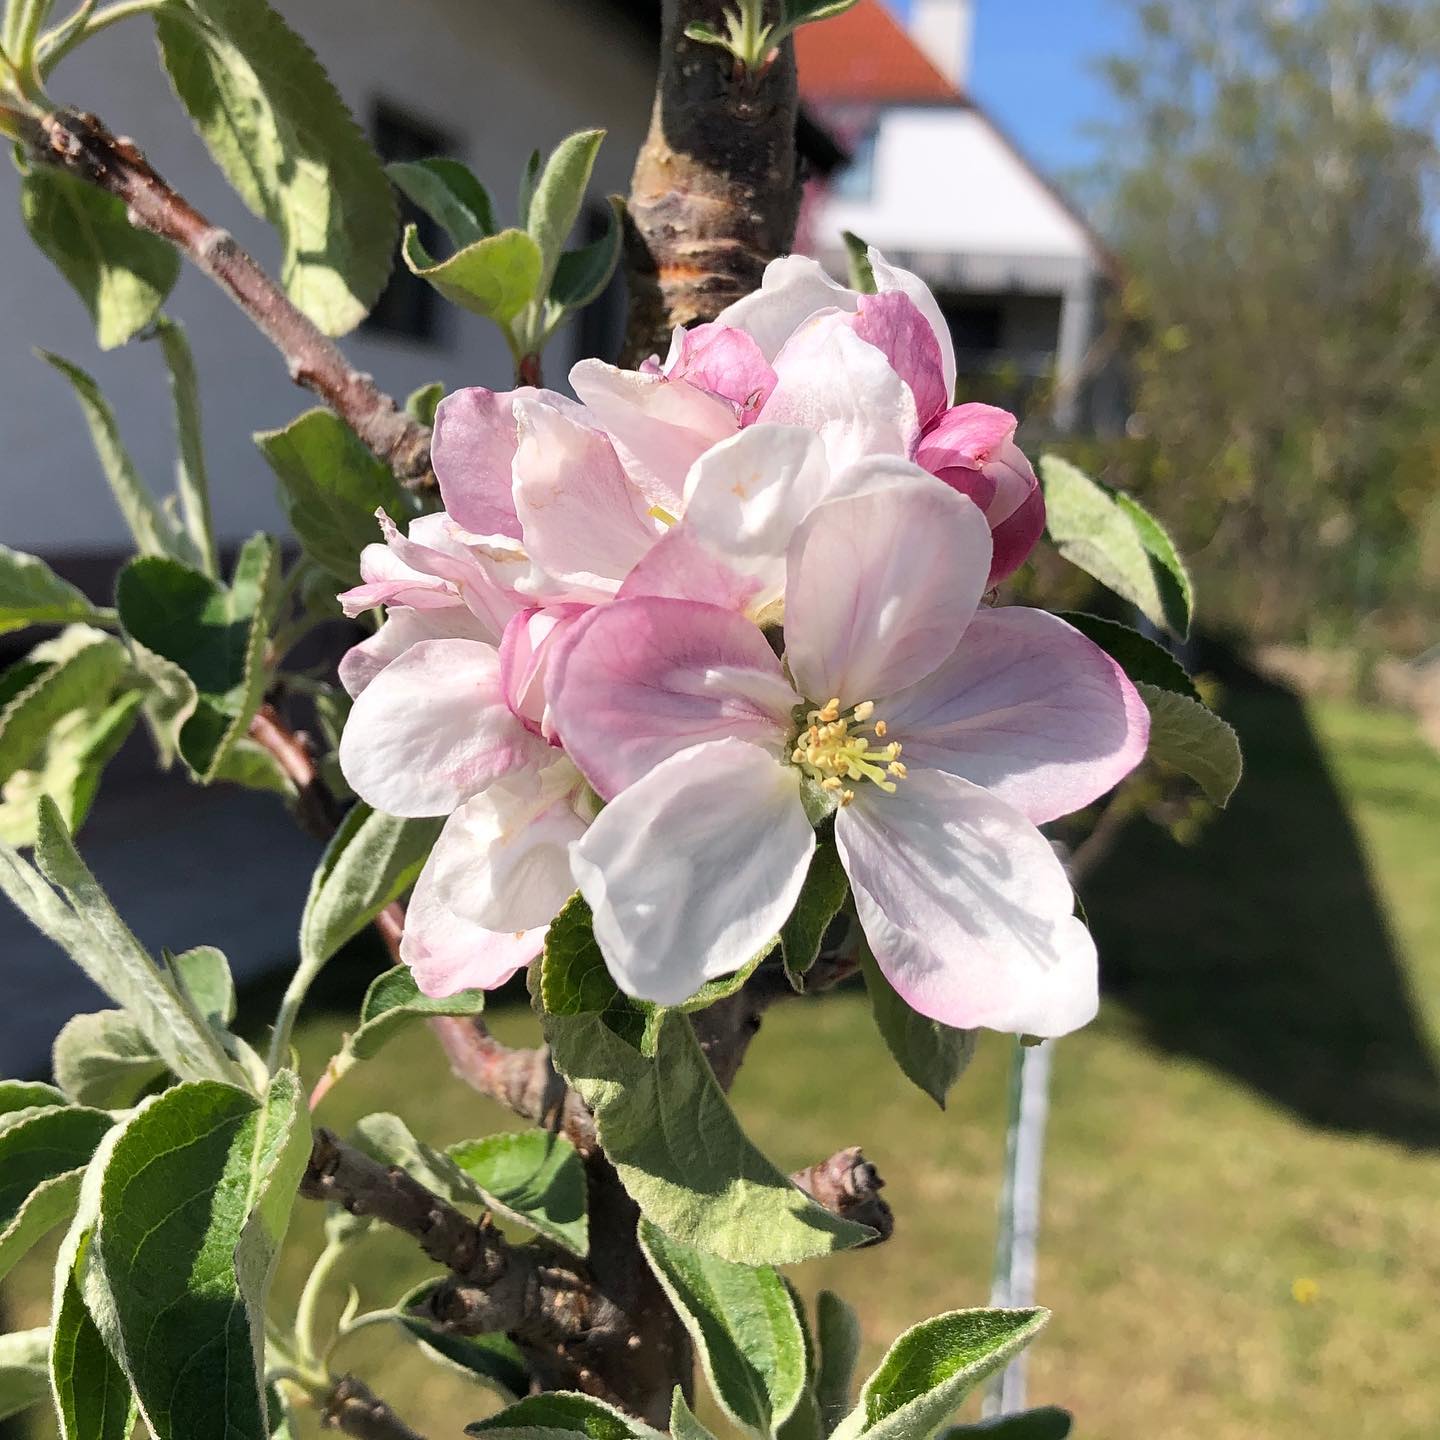 Apfelblüten sind einfach wunderschön 🤩 #apfelbaum #apfelblüte #spring #frühling #appleblossom #garten #obstgarten #garden